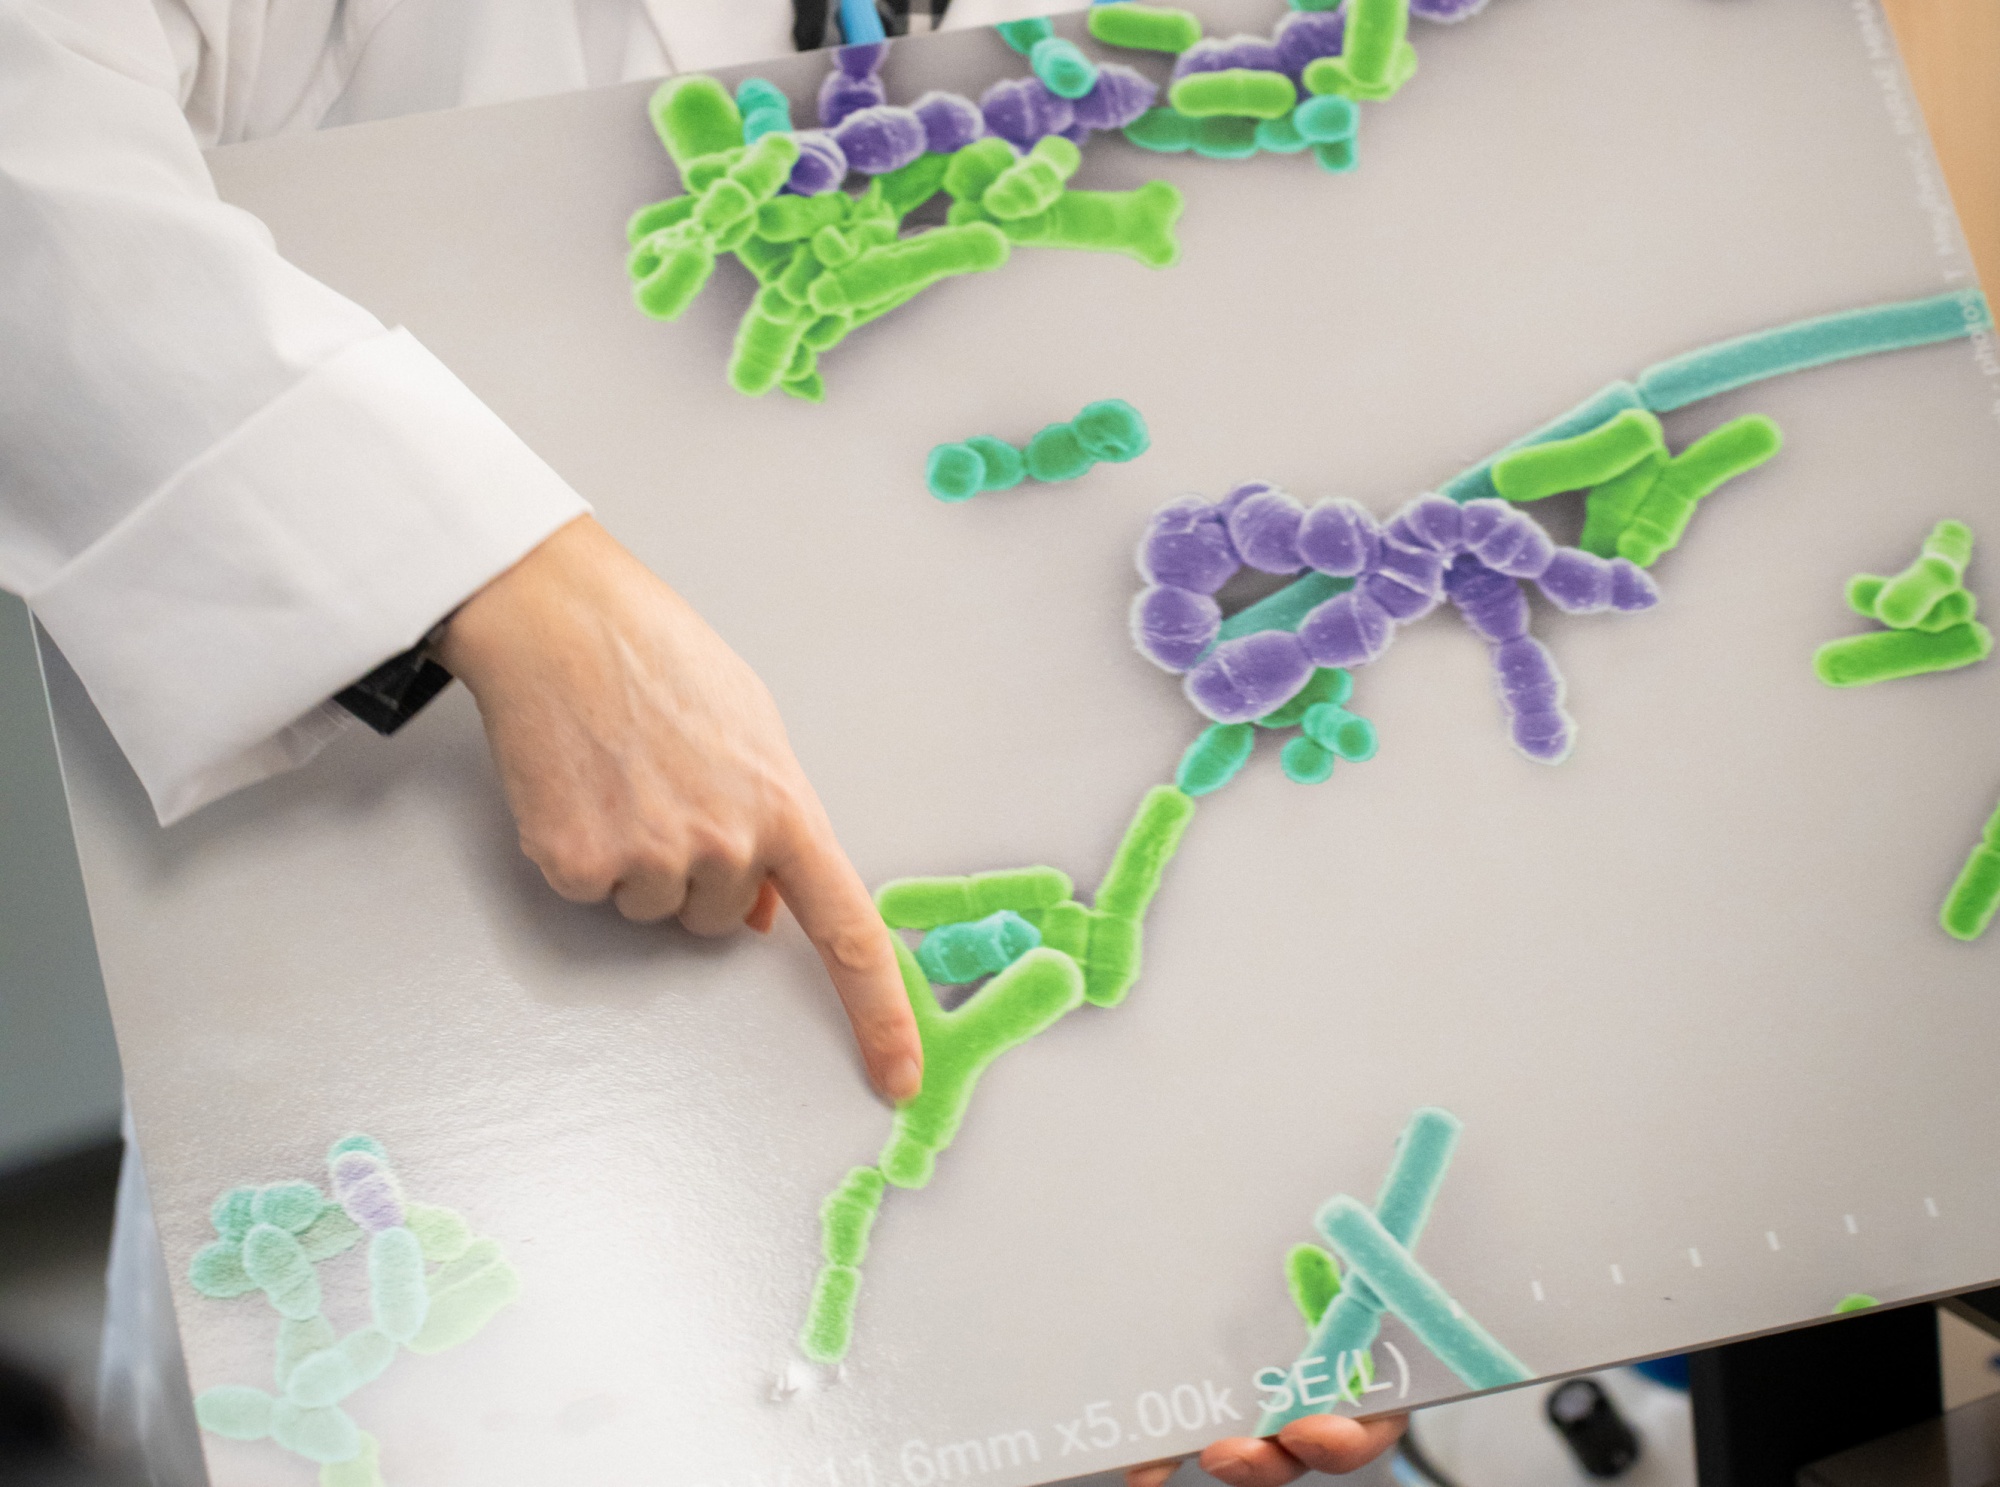 Danone lanza un nuevo suplemento probiótico de base científica